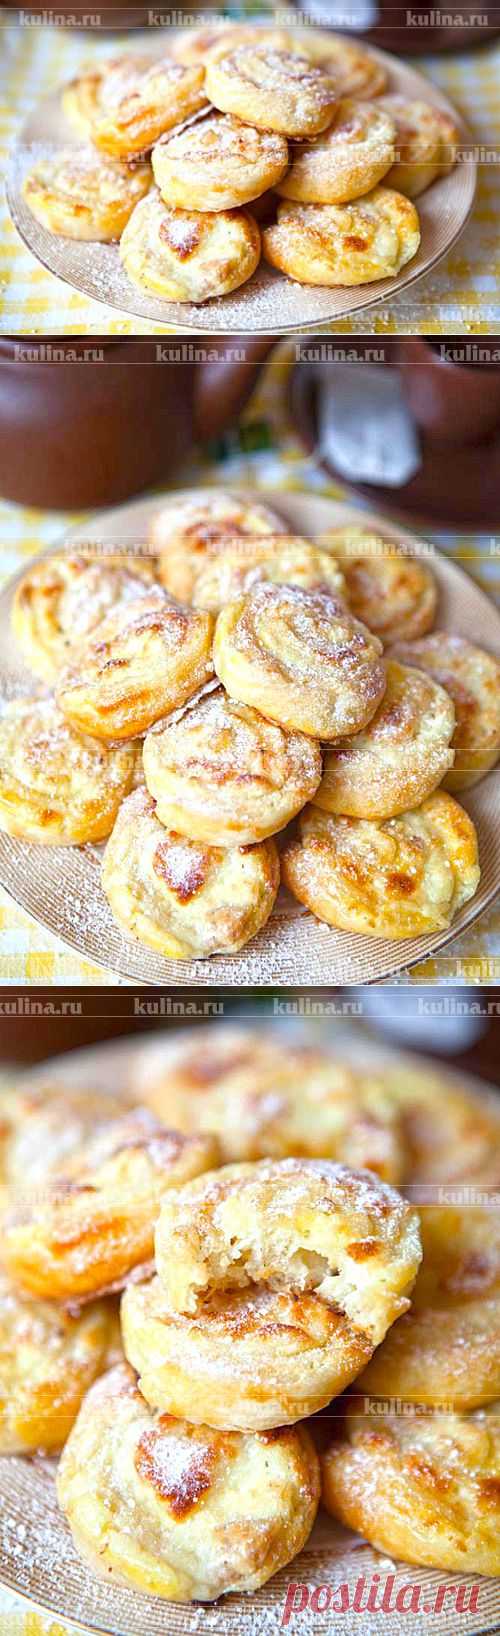 Ванильные булочки с творогом – рецепт приготовления с фото от Kulina.Ru